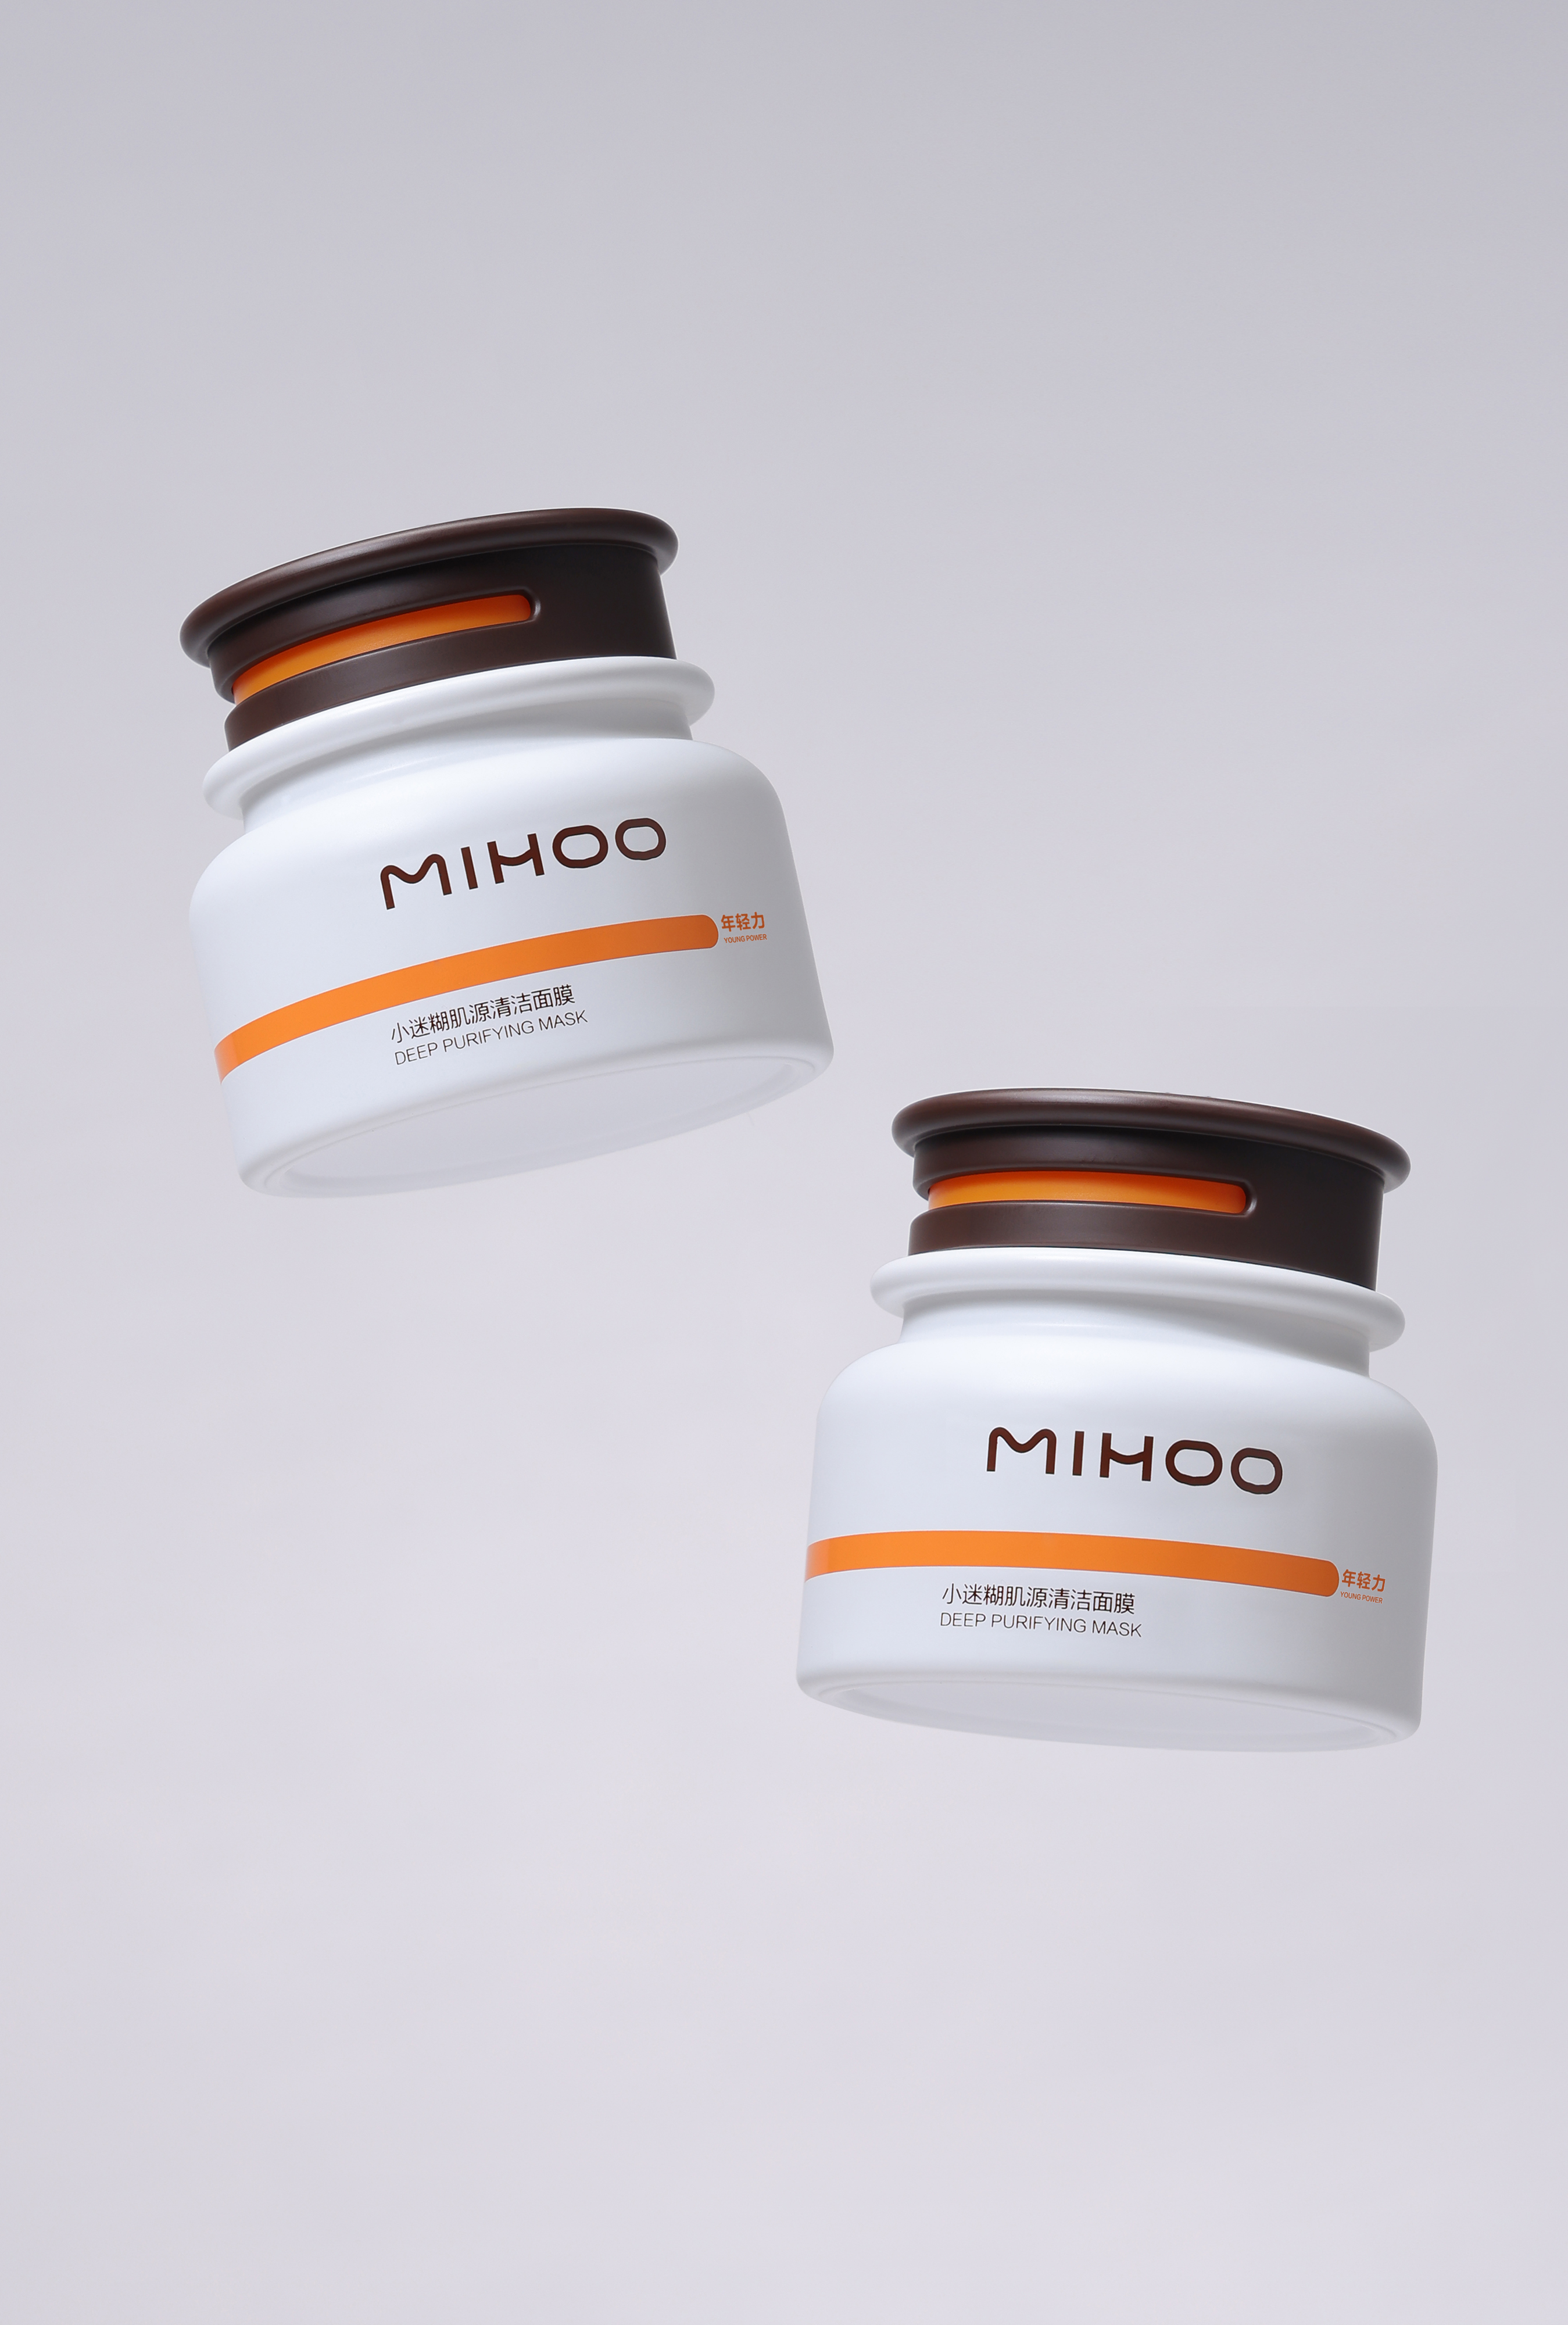 MIHOO Origin Series Packaging